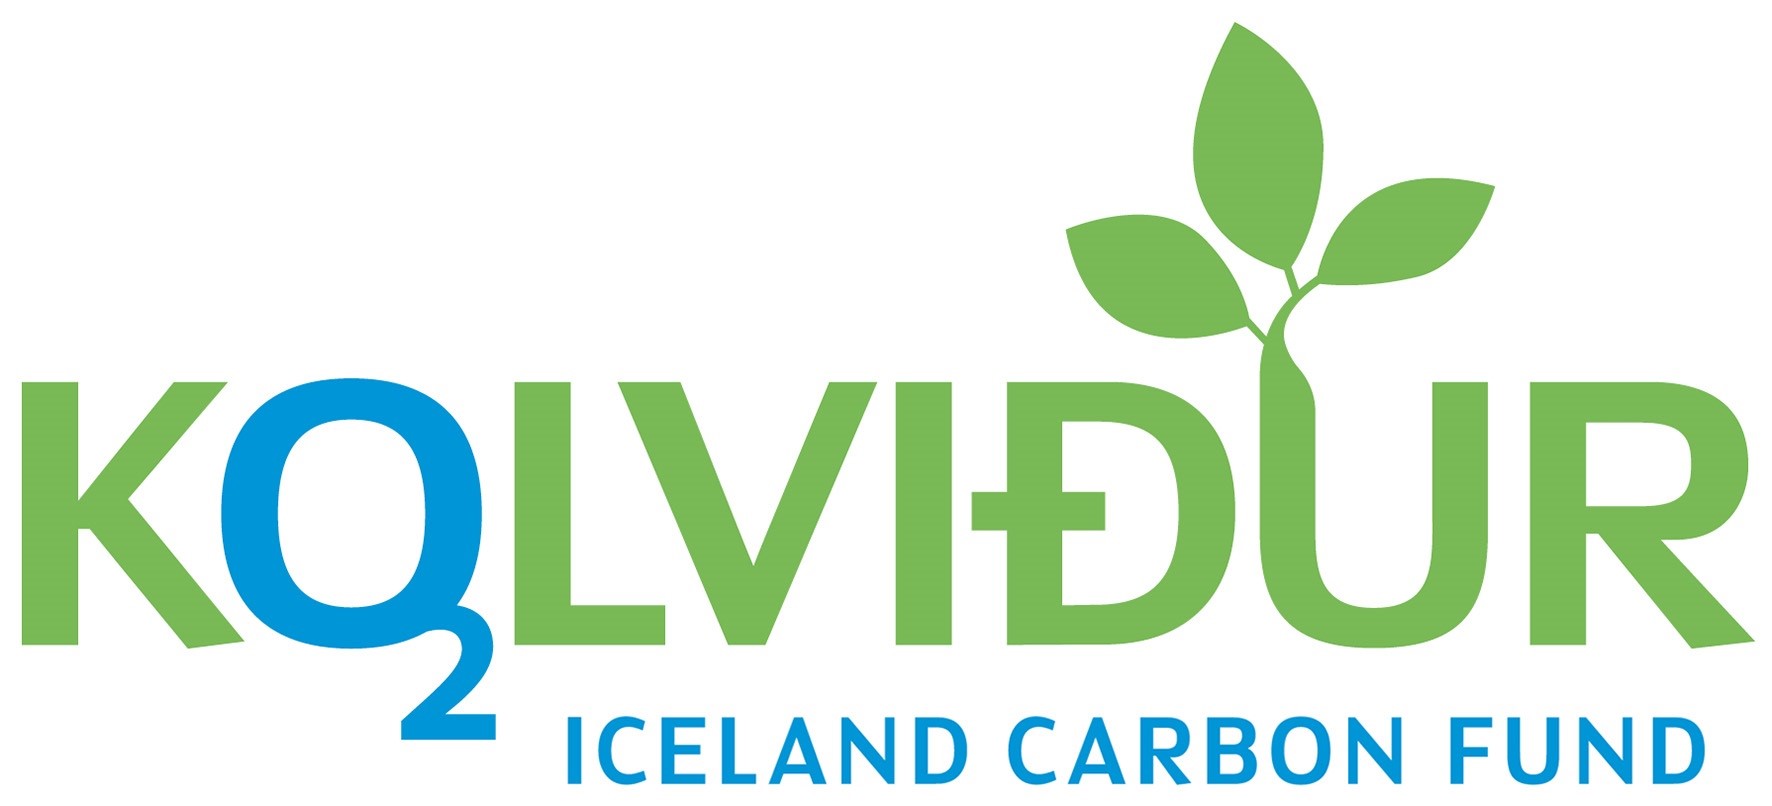 Icelandic carbon fund